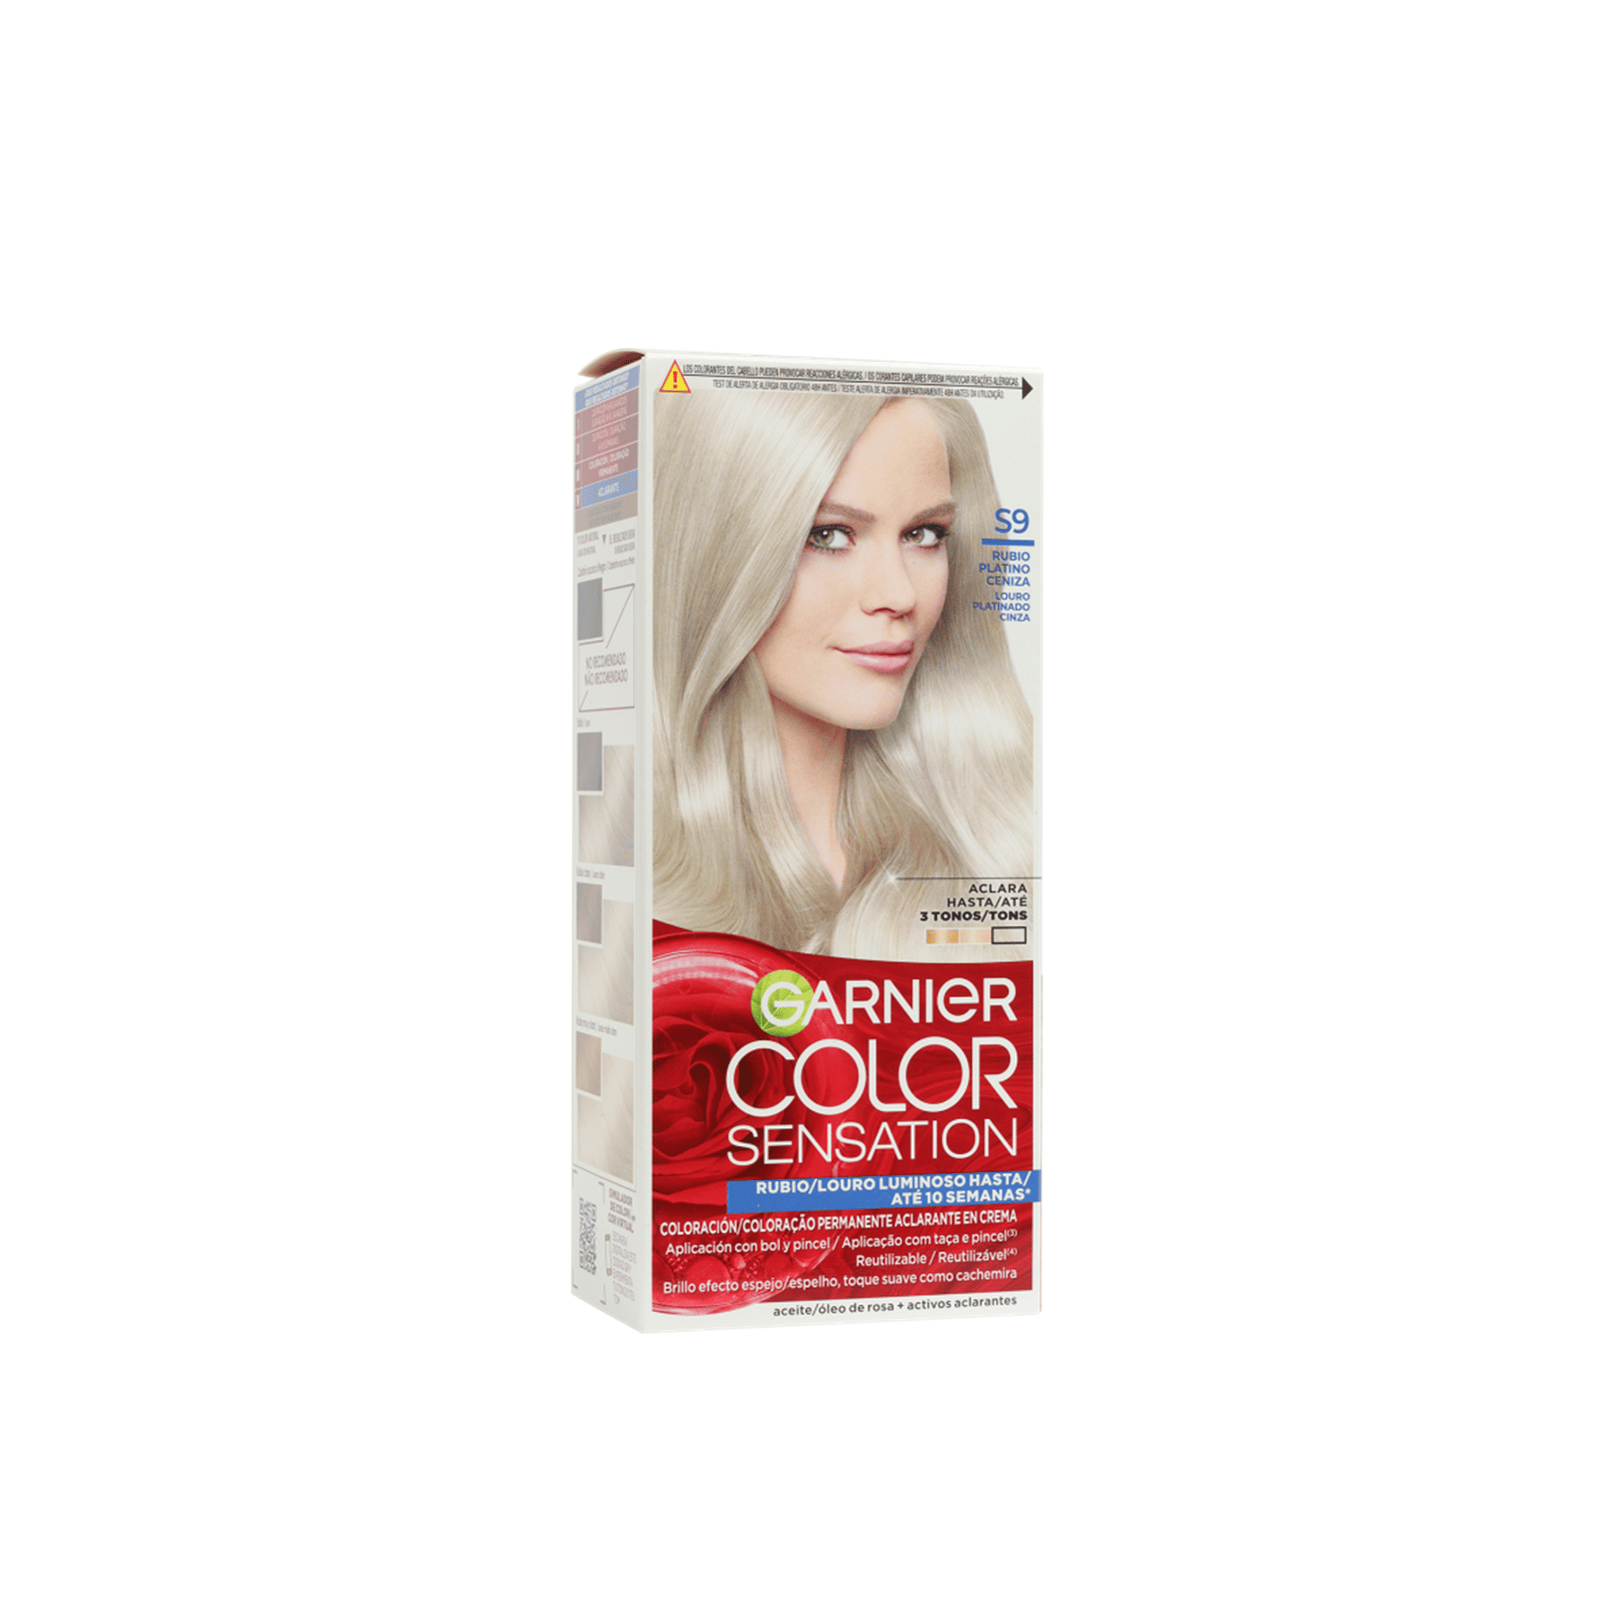 Garnier Color Sensation Permanent Hair Dye S9 Platinum Ash Blonde